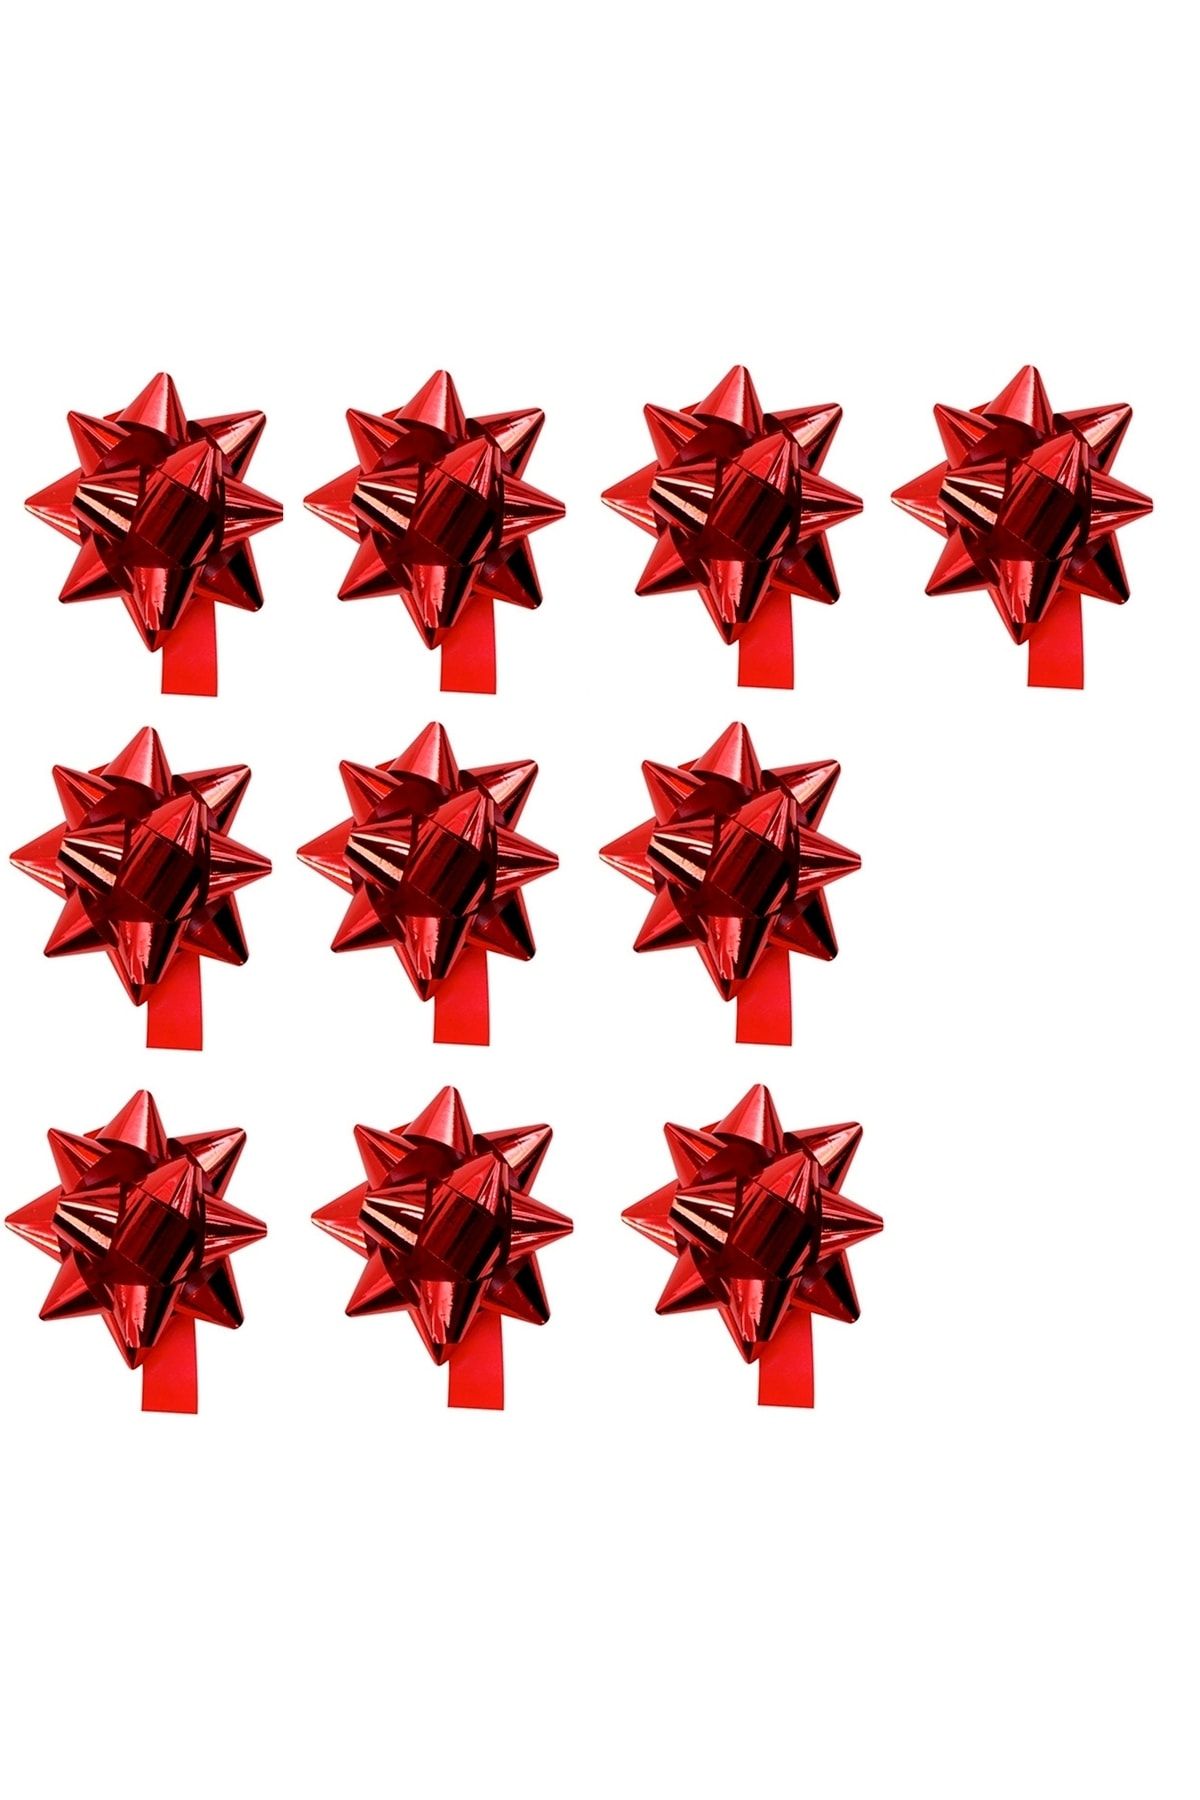 Happyland Sevgililer Günü Hediye Paketi - Hediye Kutusu Süsleme Kırmızı Metalik Fiyonk Süs Çekçek 10 Adet